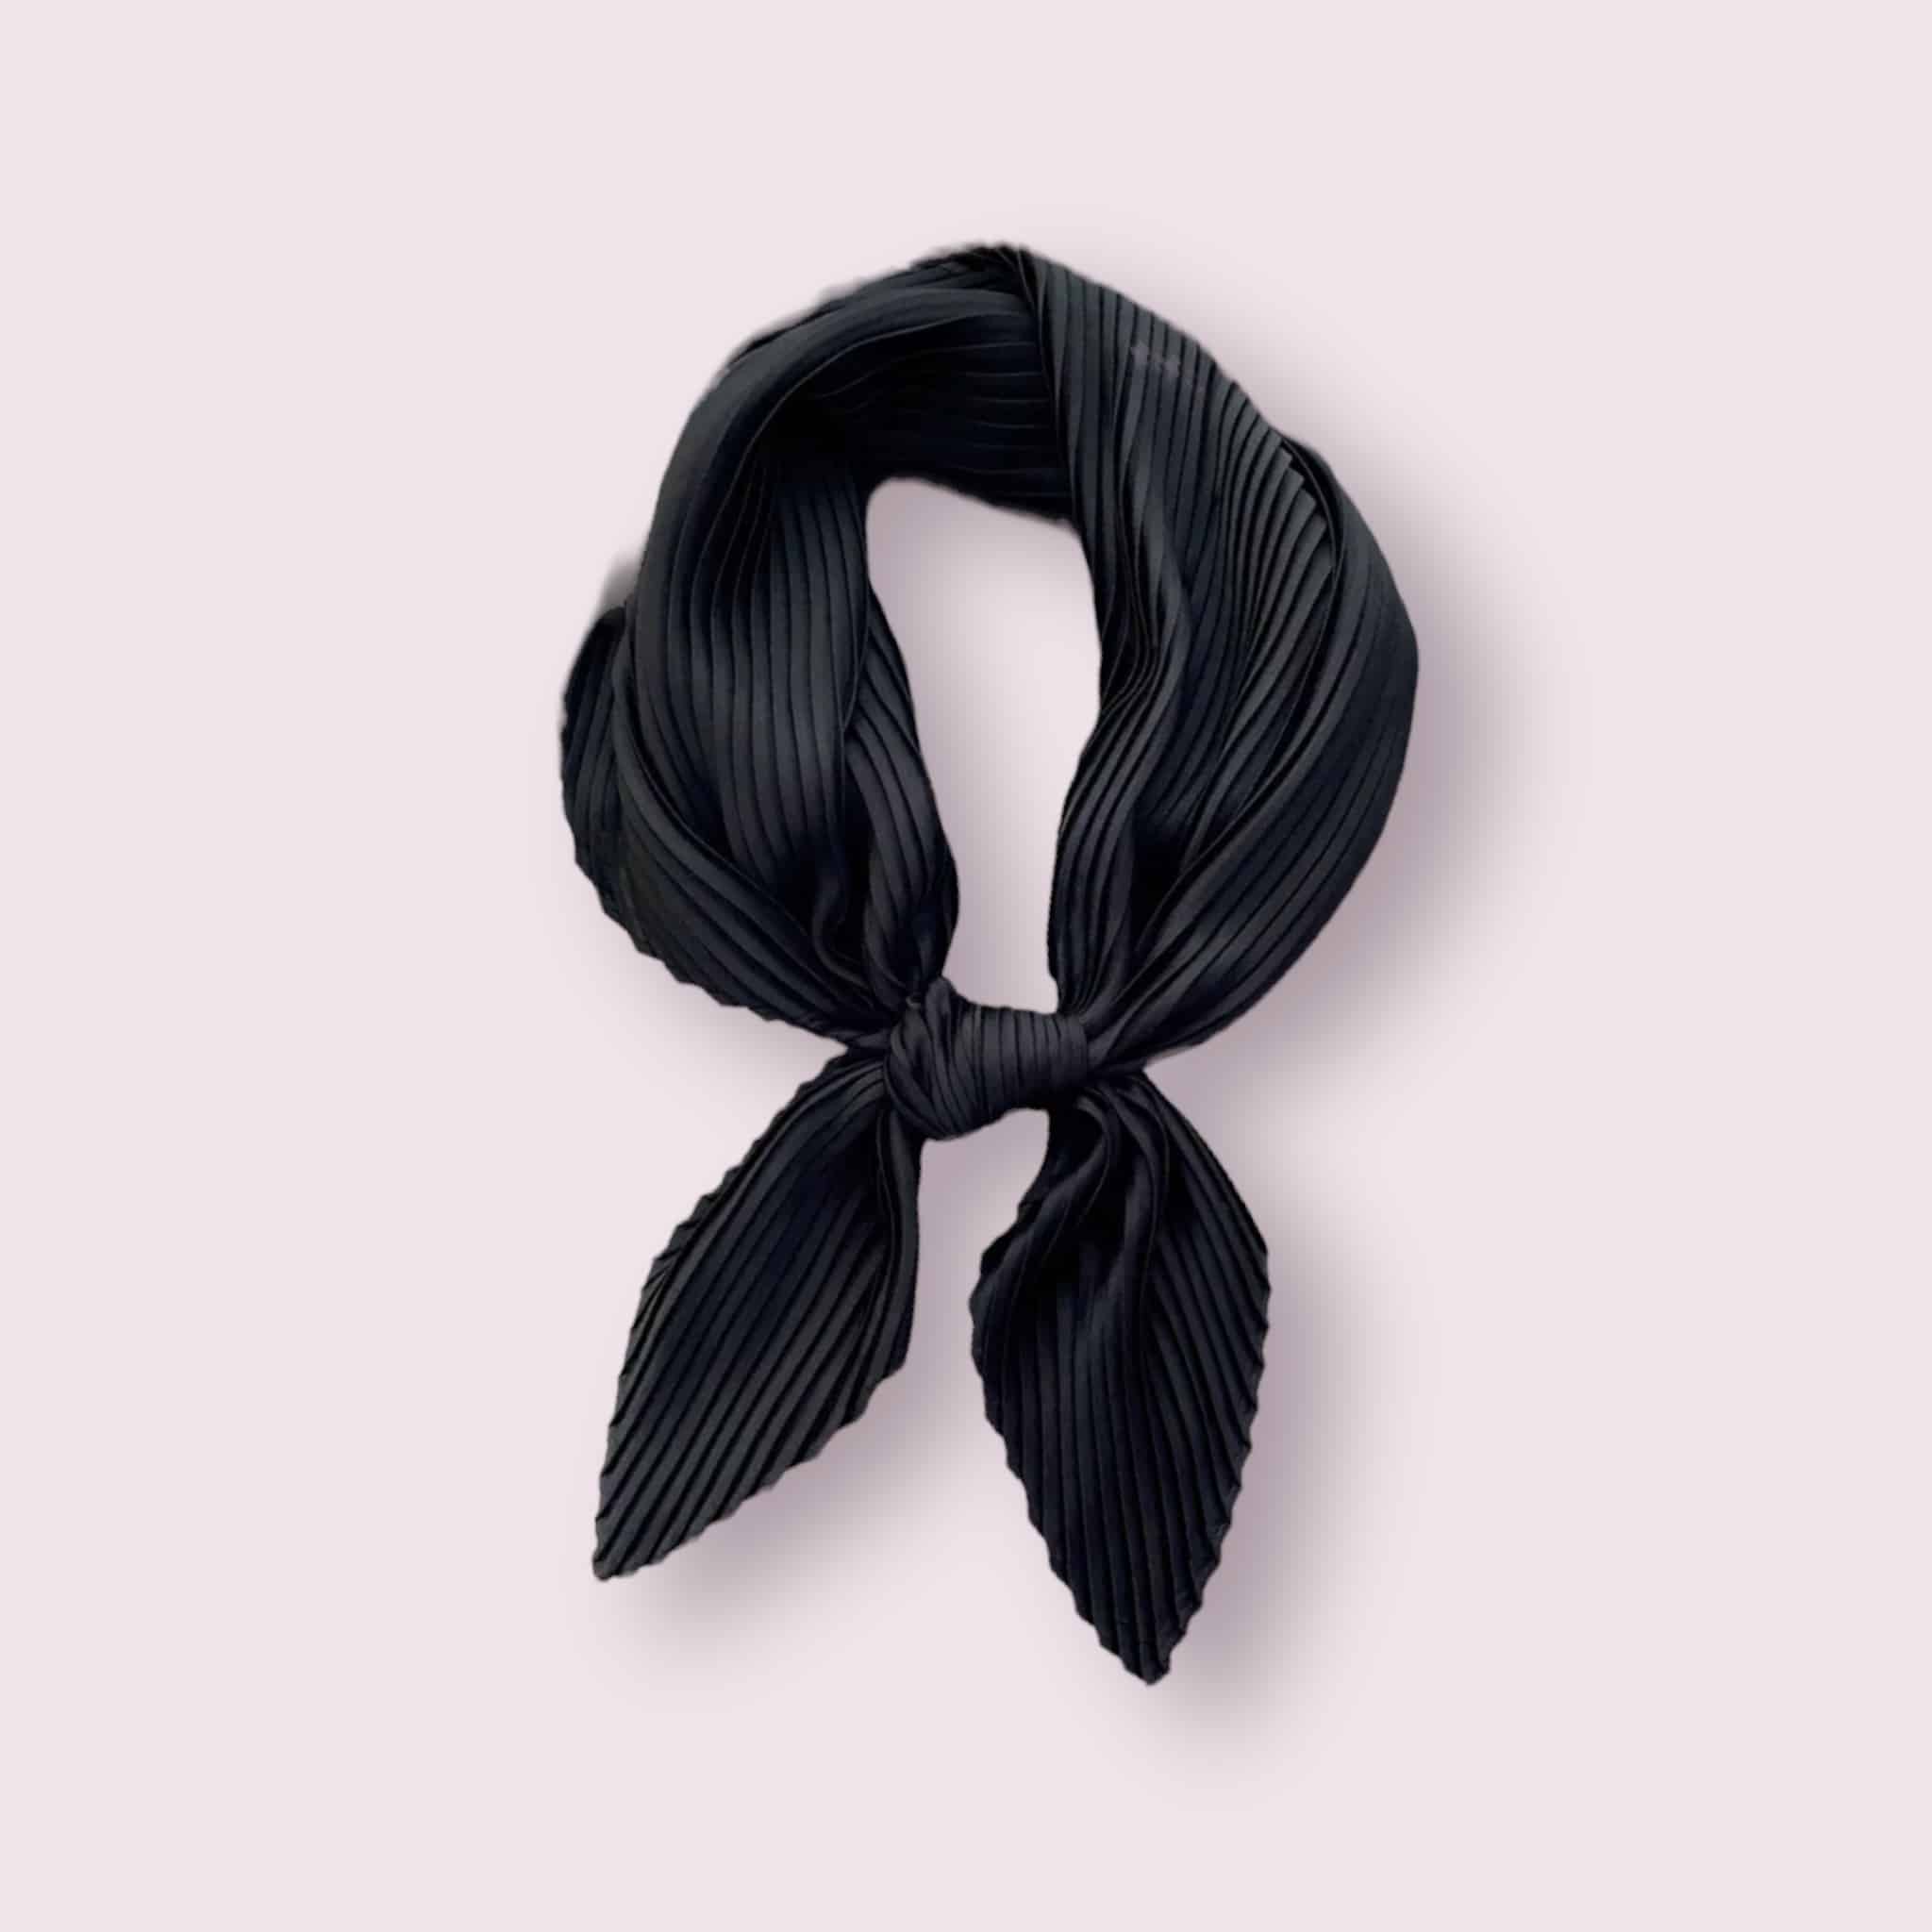 Élégant foulard en satin de couleur noir, délicatement plissé.